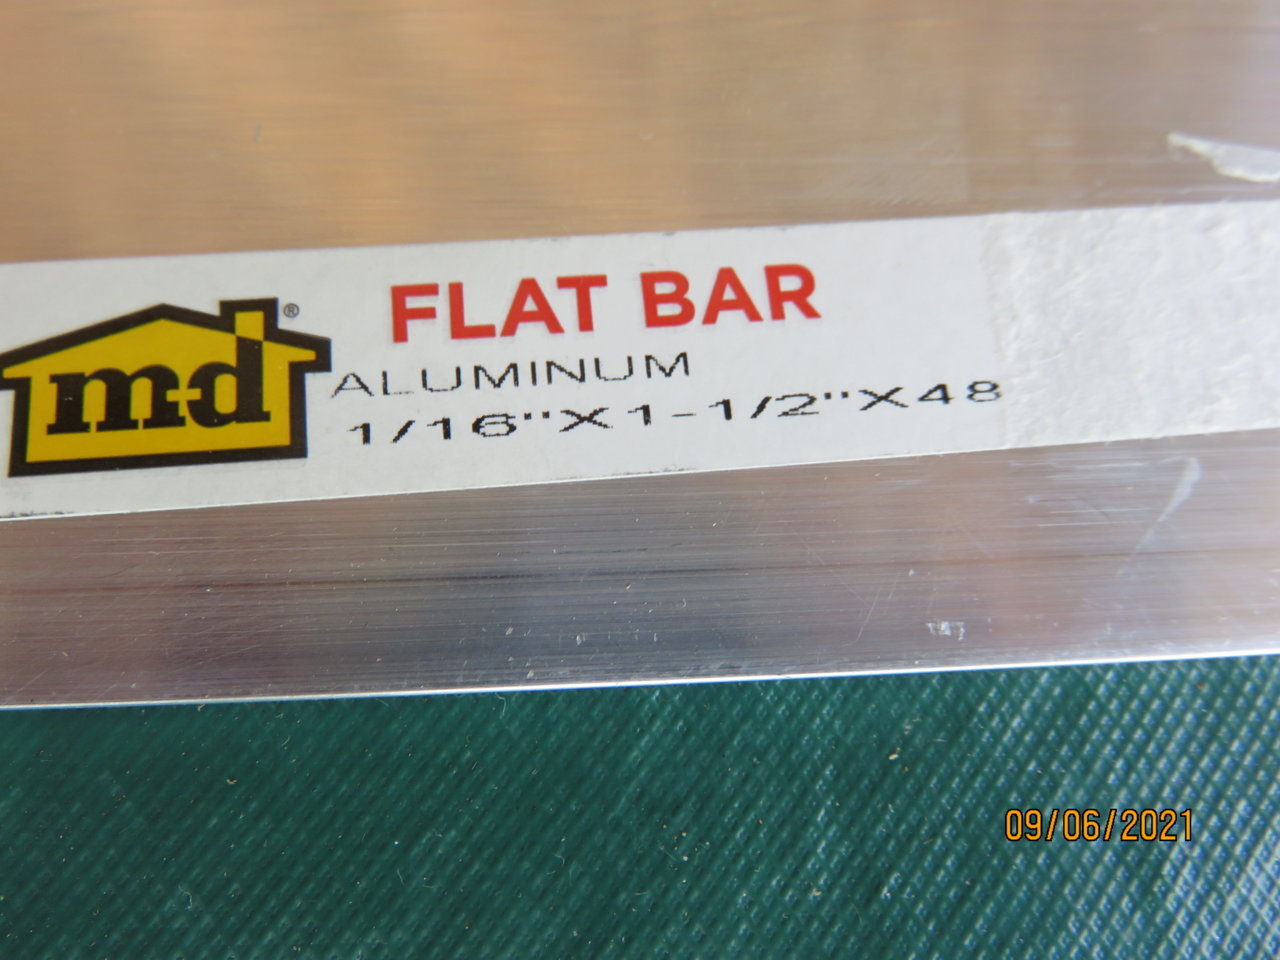 MD alumimum flat bar IMG_1979.jpg